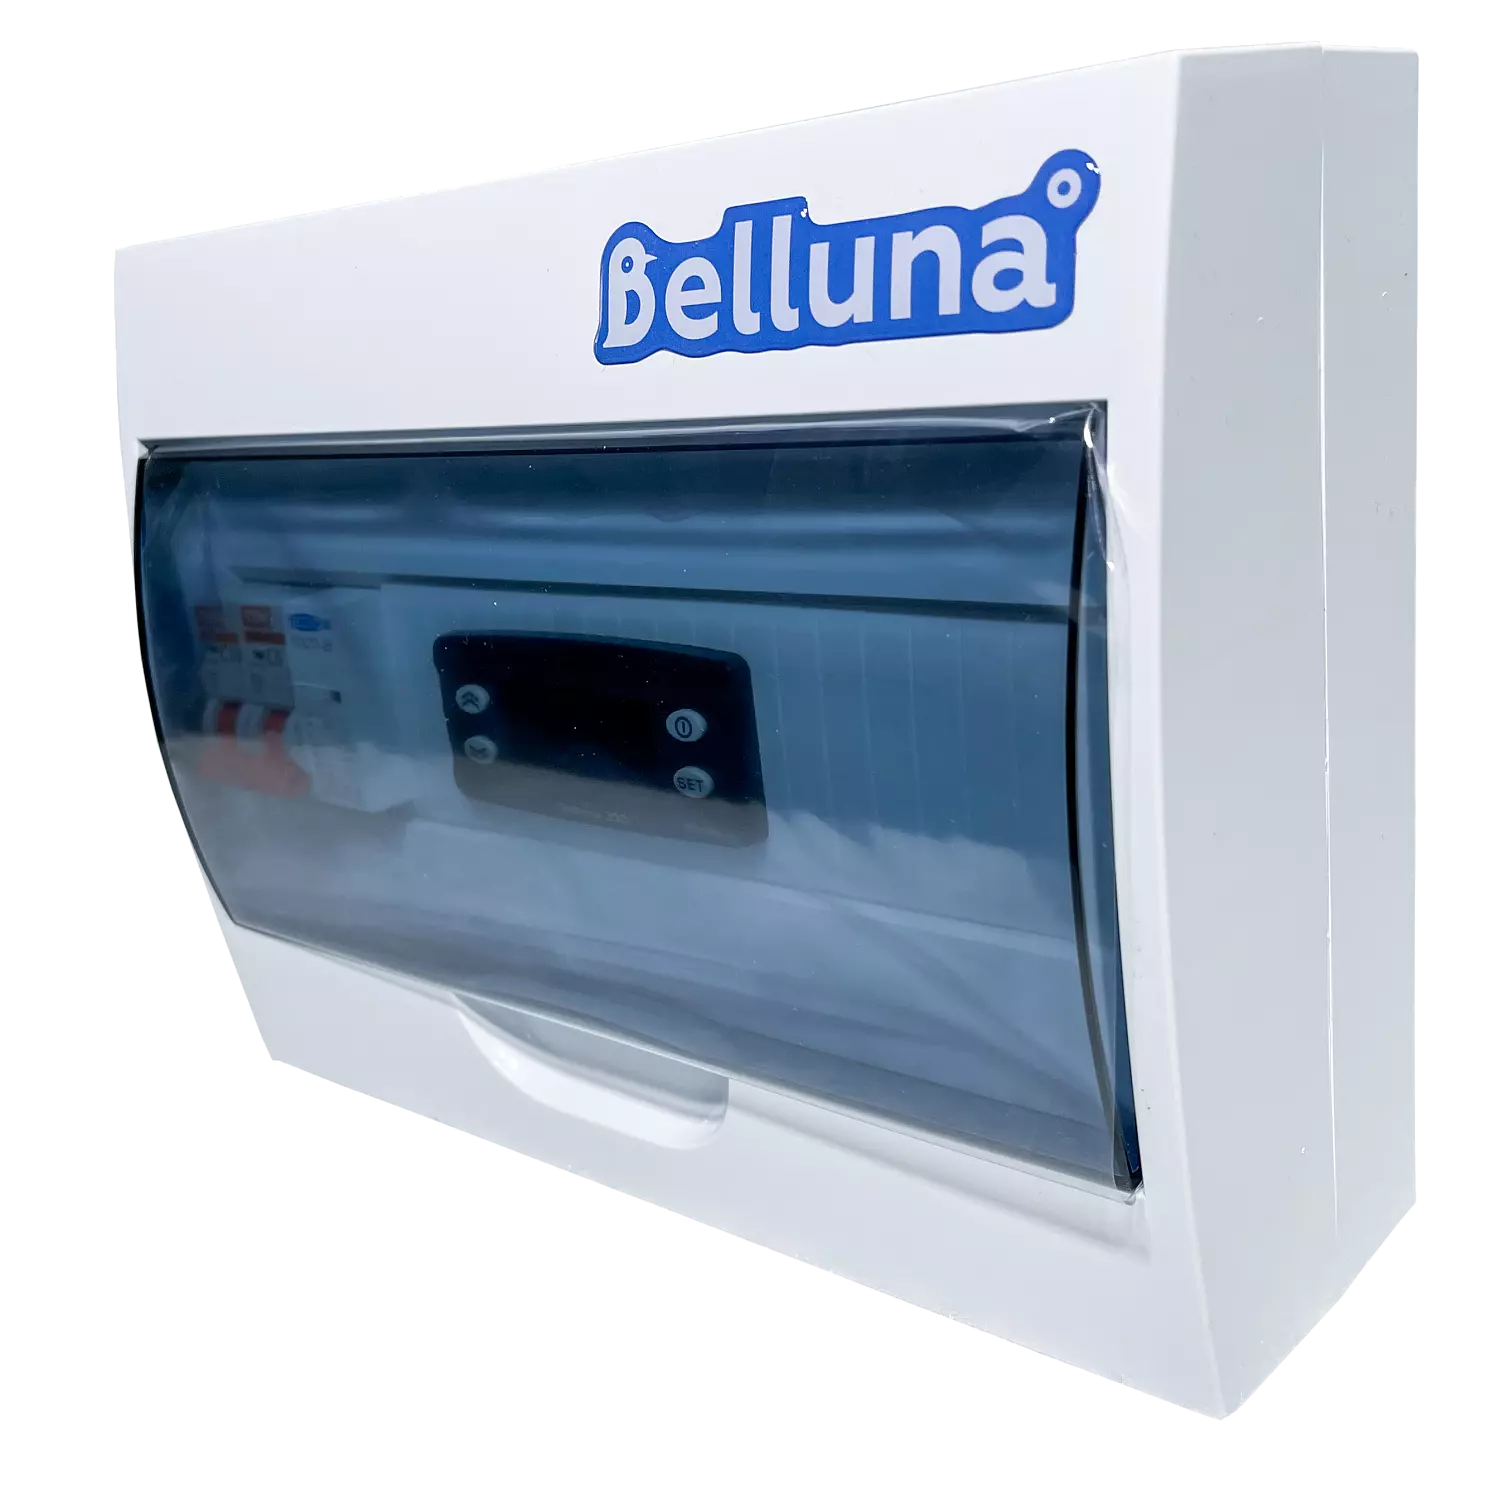 сплит-система Belluna U316 Екатеринбург